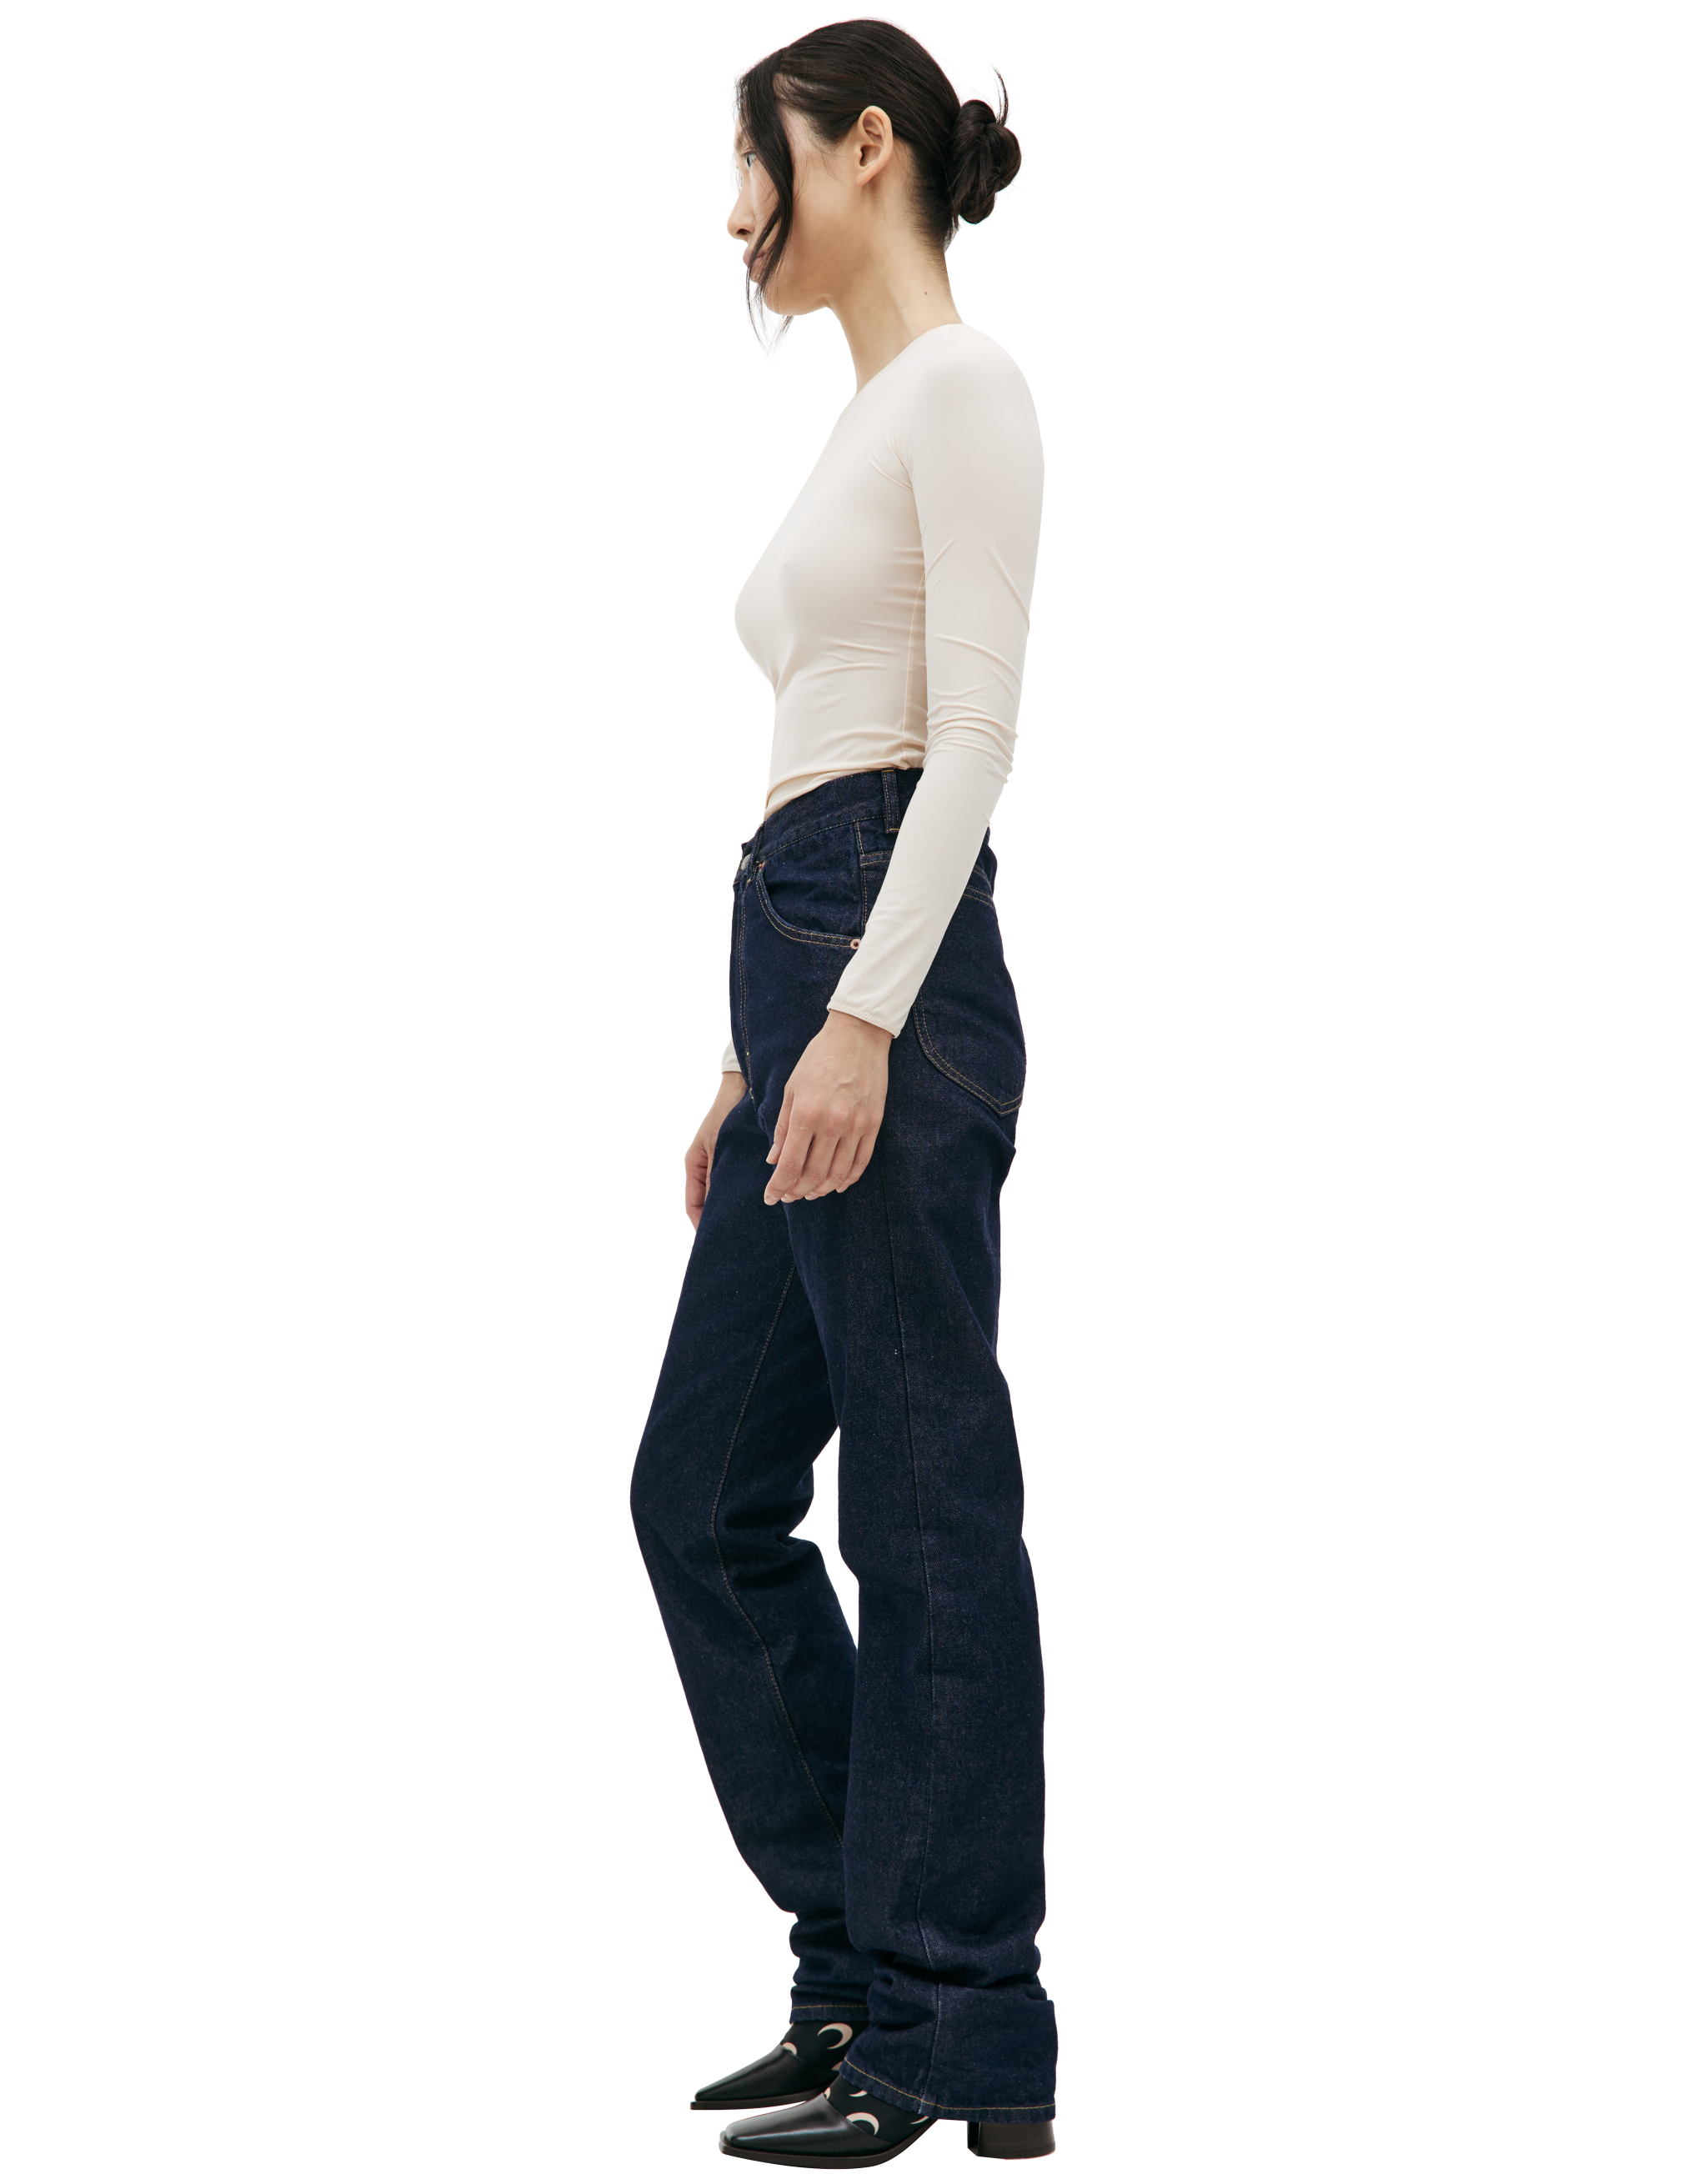 Прямые джинсы с контрастной строчкой Maison Margiela S67LA0026/S30854/470, размер 30;32;34 S67LA0026/S30854/470 - фото 1